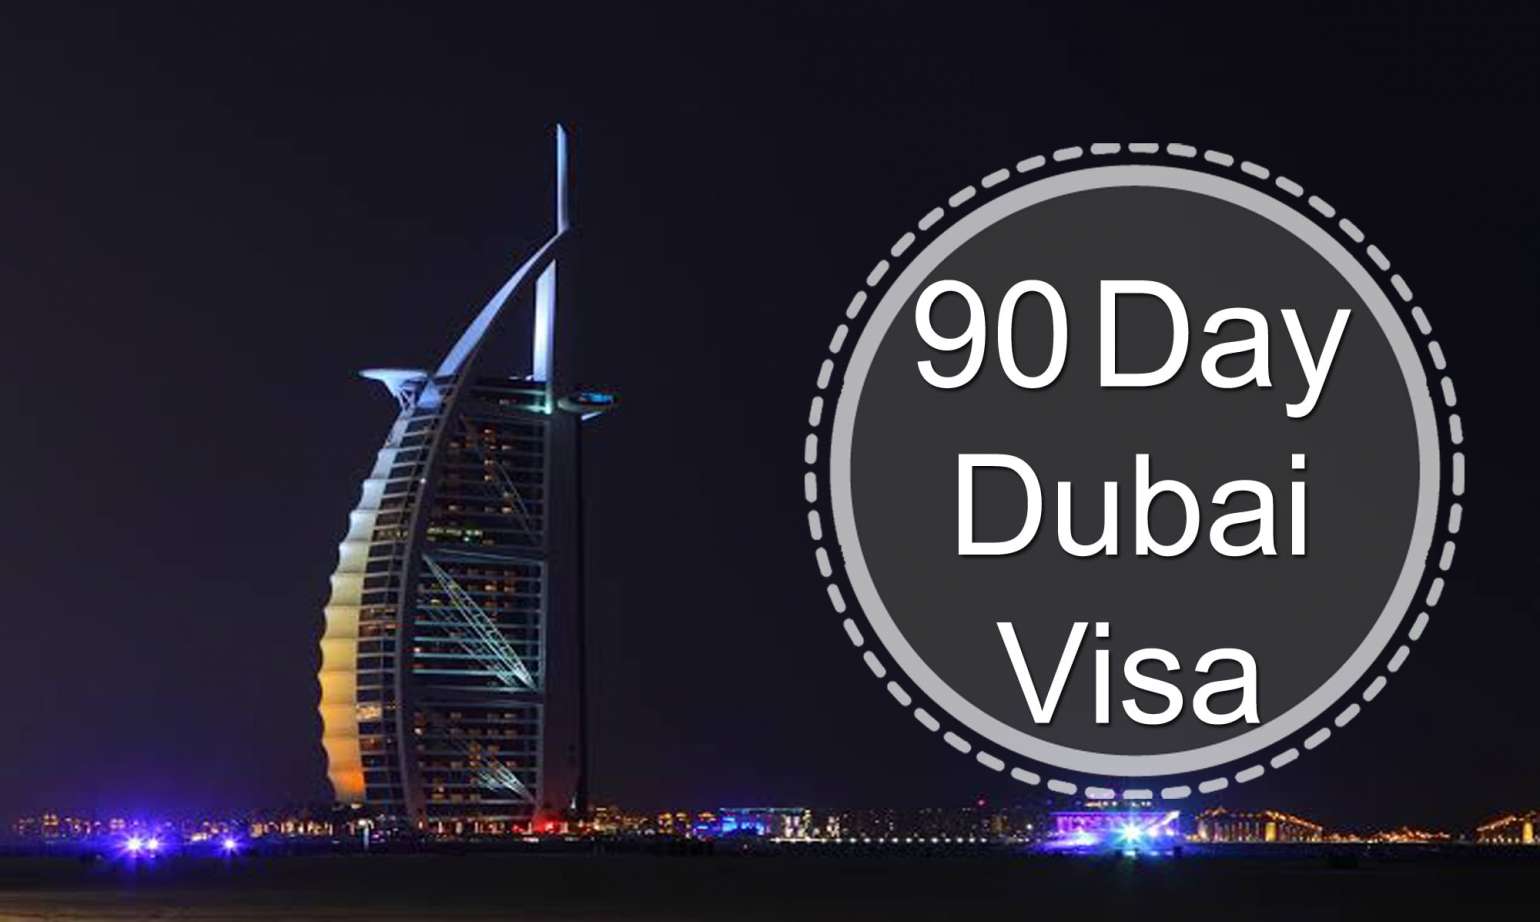 90 Days Dubai Visa